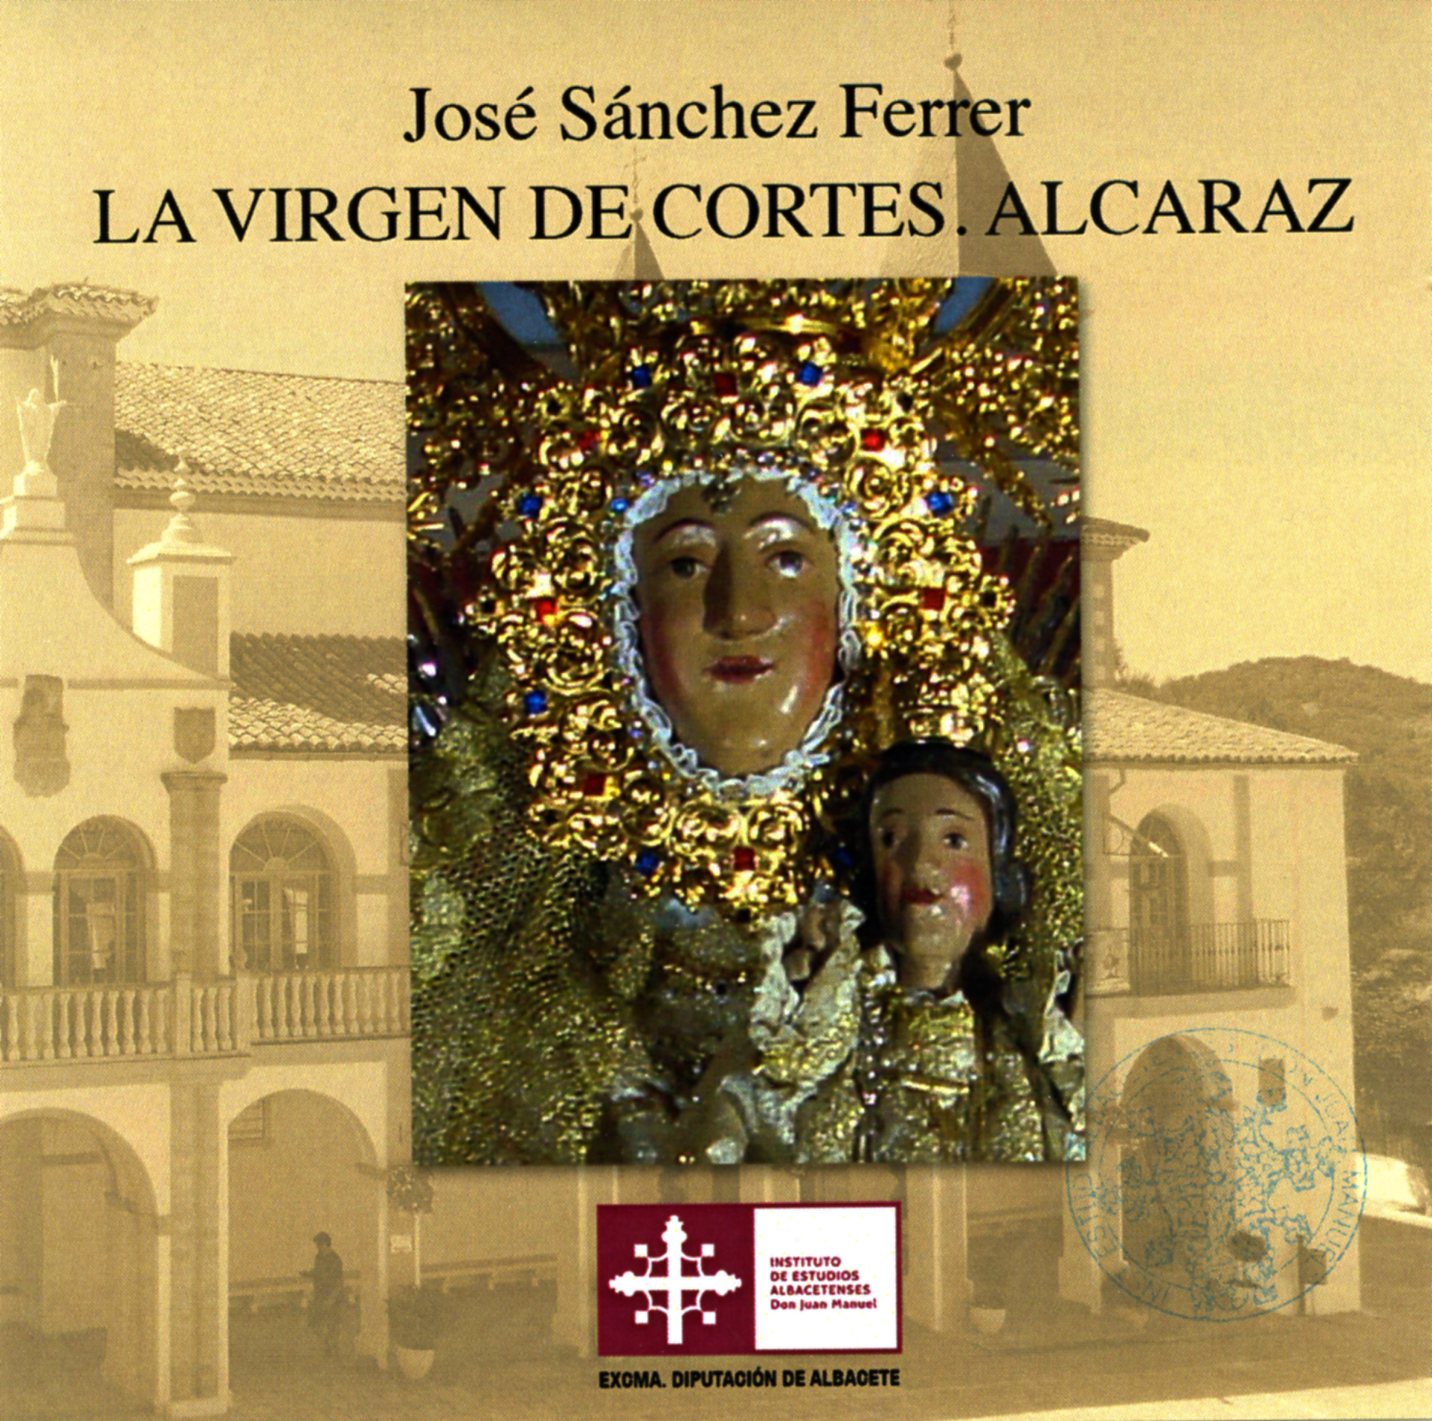 Imagen de portada del libro La Virgen de Cortes, Alcaraz